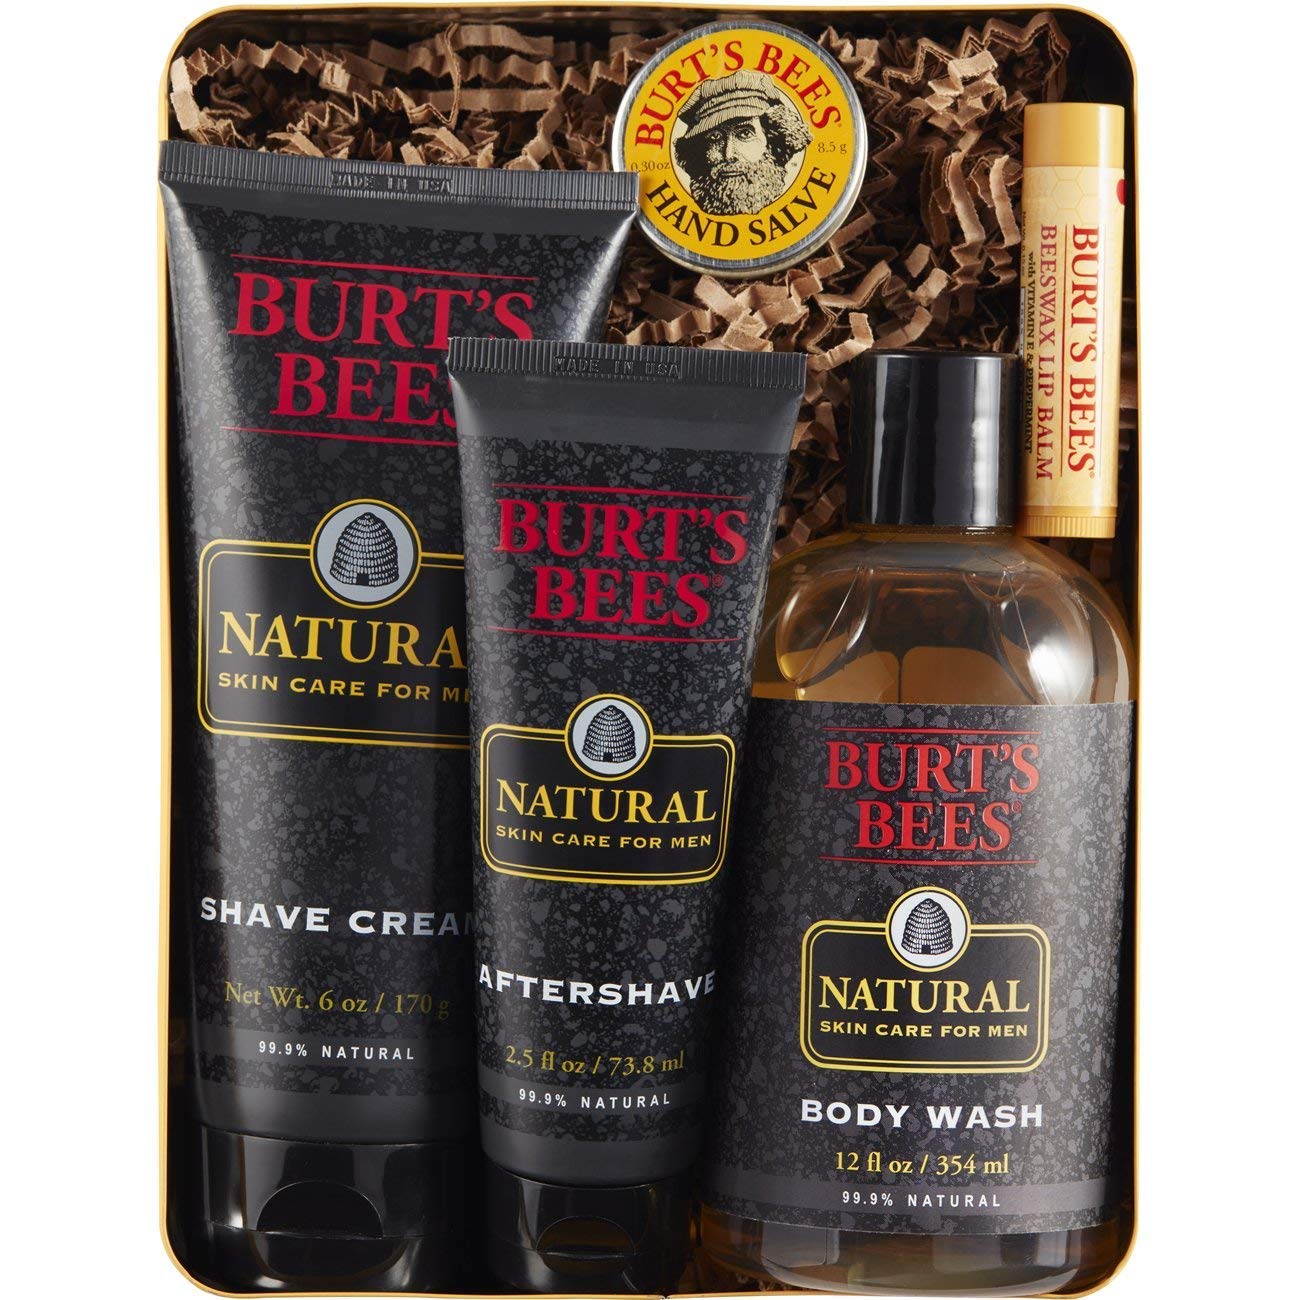 Burt's Bees 5-piece gift set for men